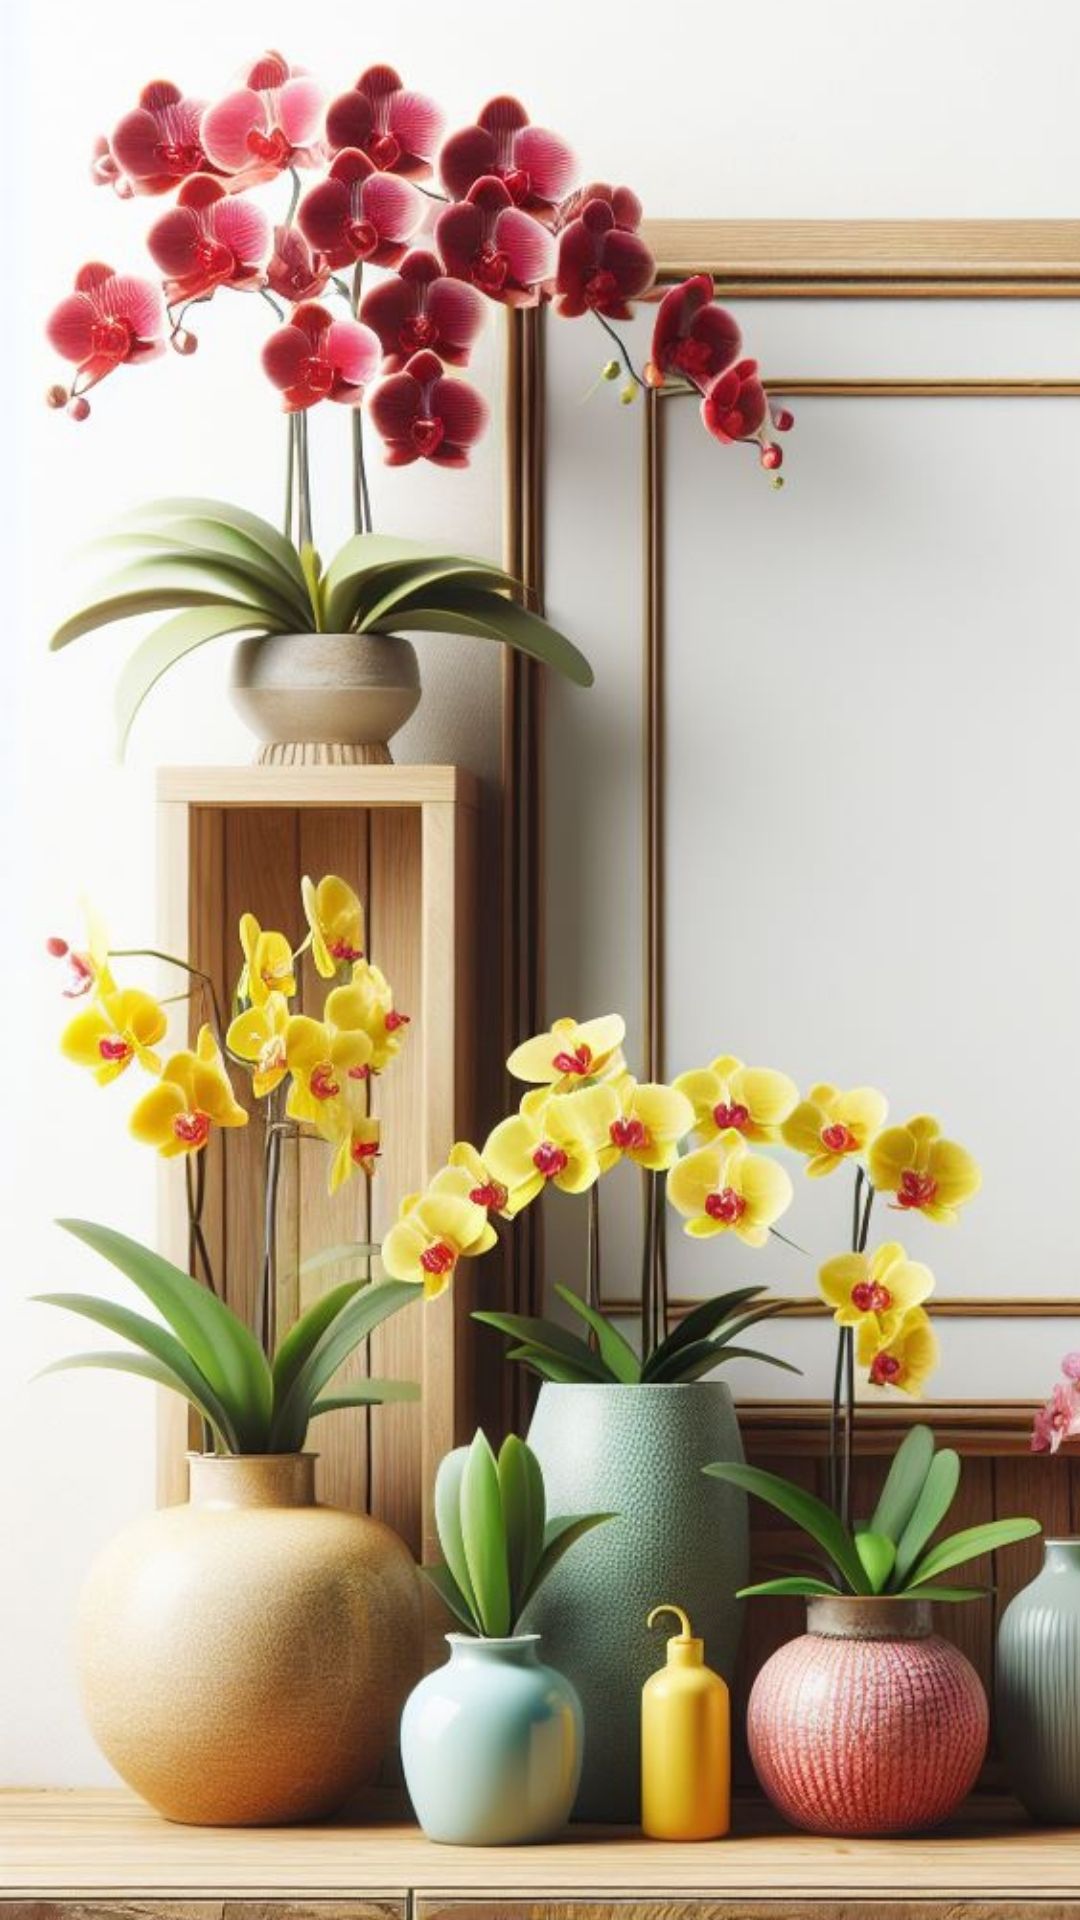 Beleza exótica: Orquídeas brasileiras em todo seu esplendor